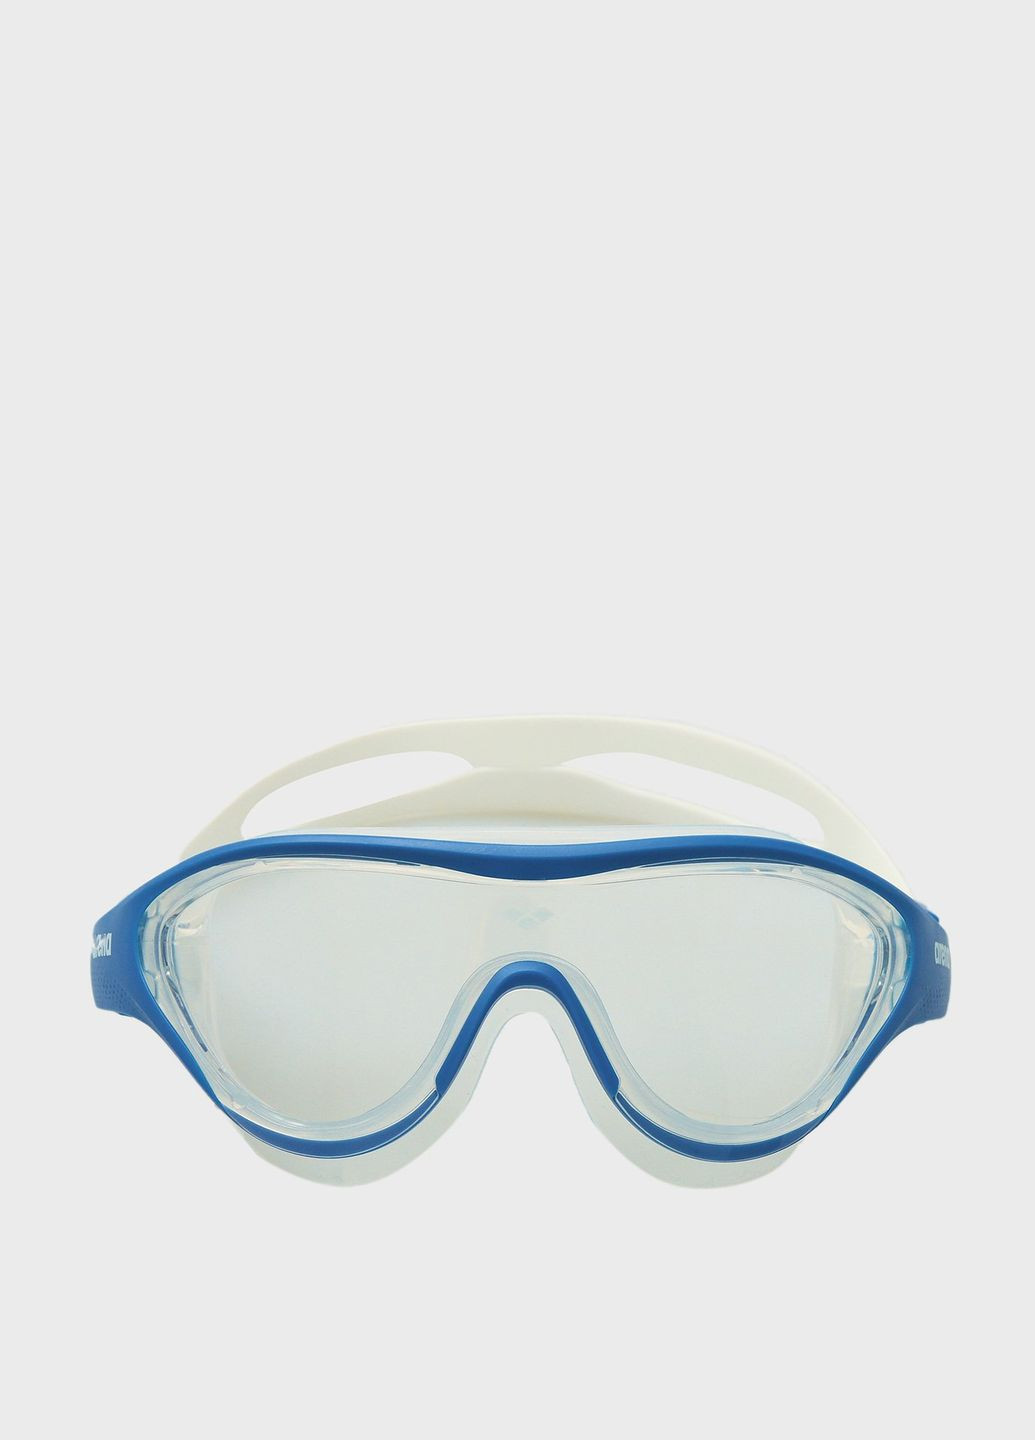 Очки для плавания THE ONE MASK прозрачный, голубой, белый Unisex OSFM Arena (262981729)